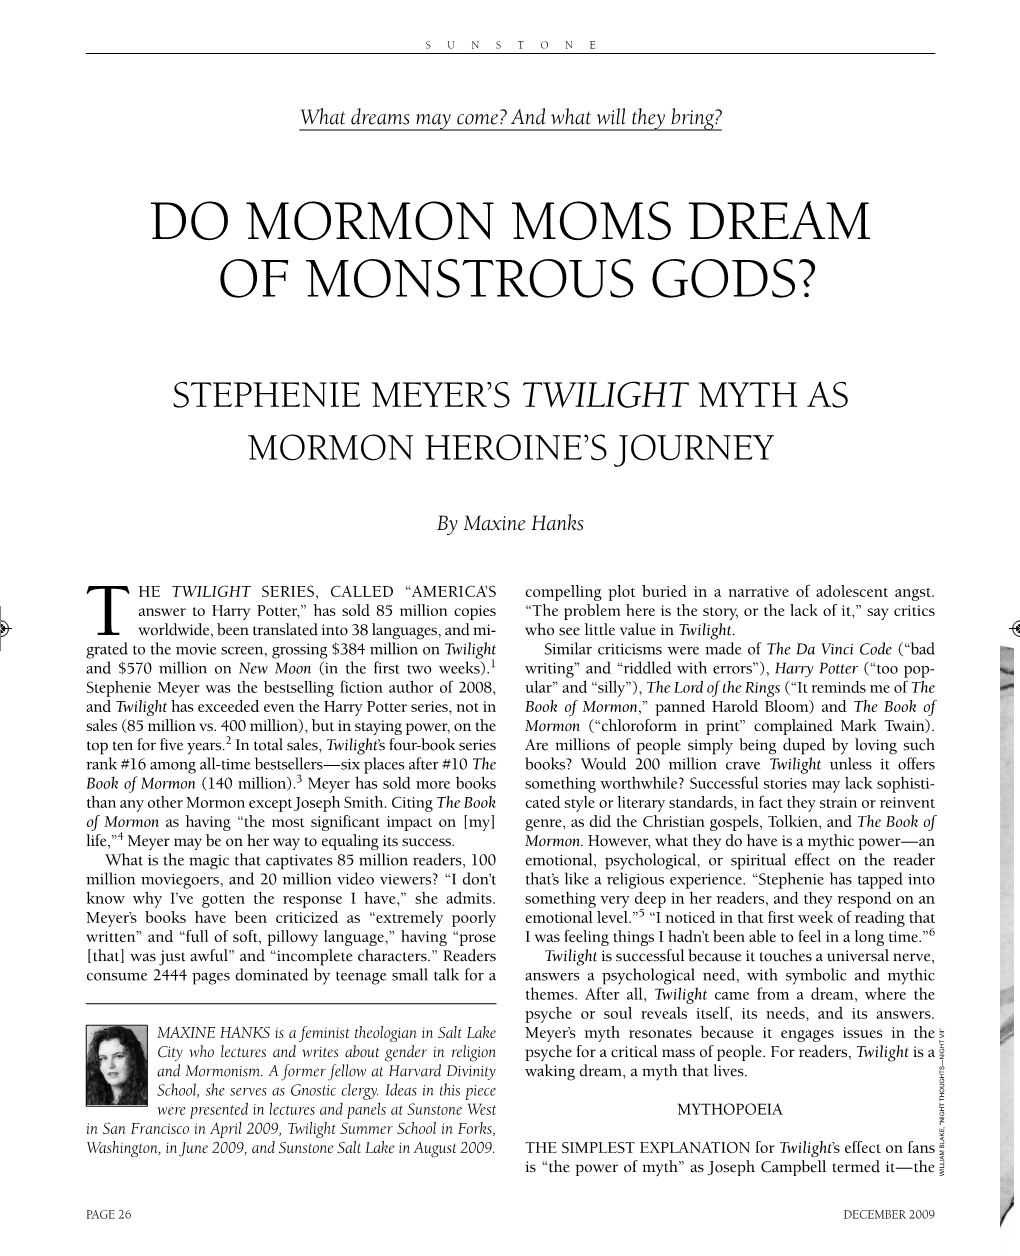 Do Mormon Moms Dream of Monstrous Gods?